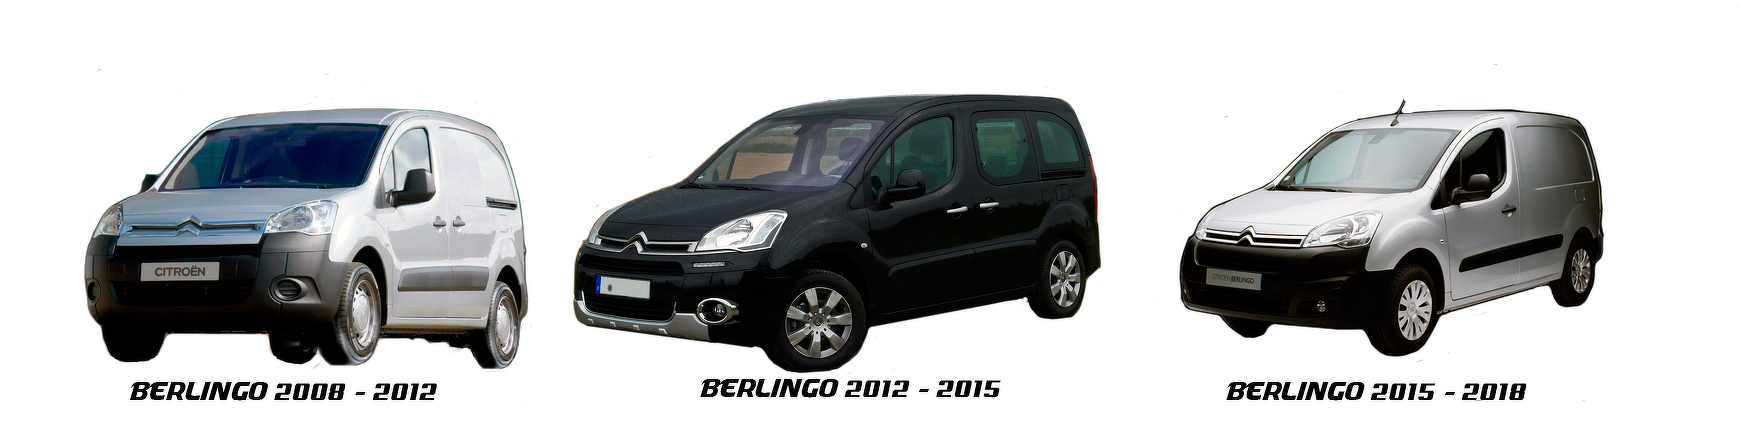 Piezas y Recambios  de Citroën Berlingo de 2012 a 2015 | Veramauto.es